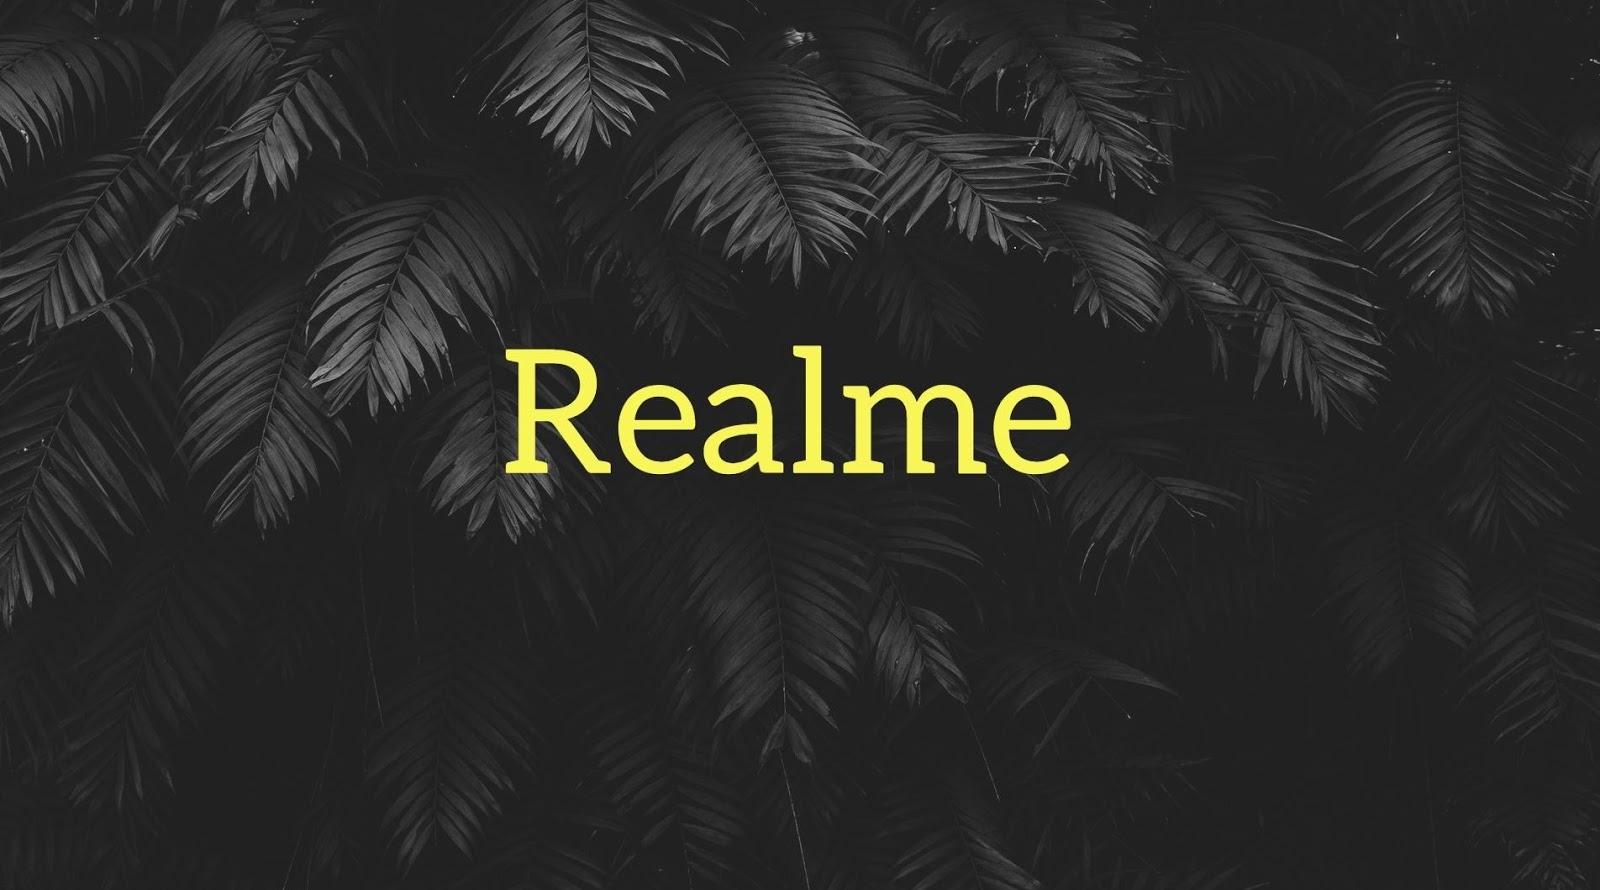 Реалми видео обои. Заставка Realme. Realme логотип. Обои с надписью Realme. Обои с логотипом РЕАЛМИ.